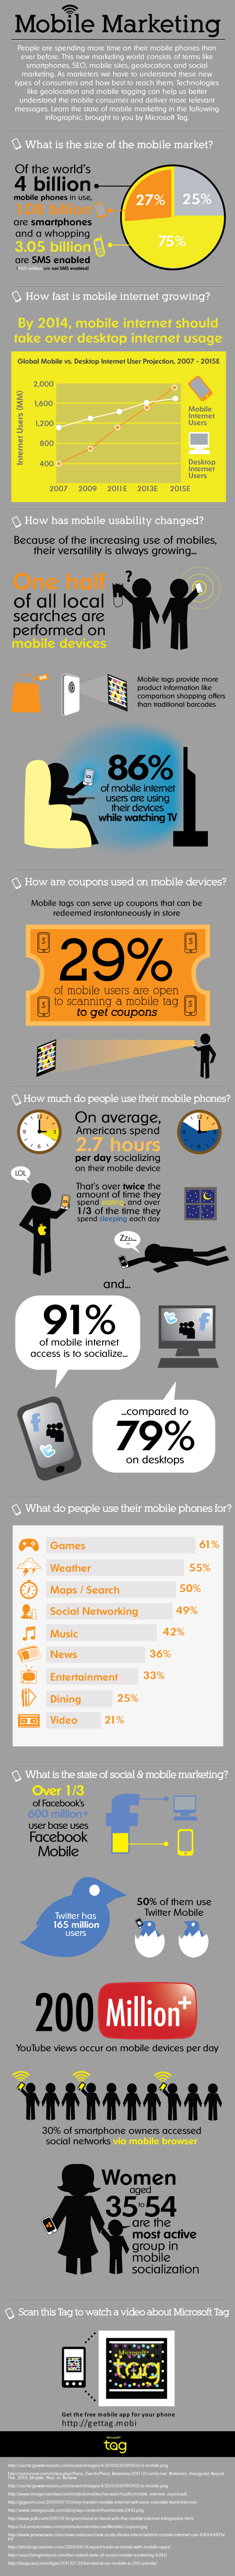 Цікаві факти мобільного маркетингу (інфографіка)